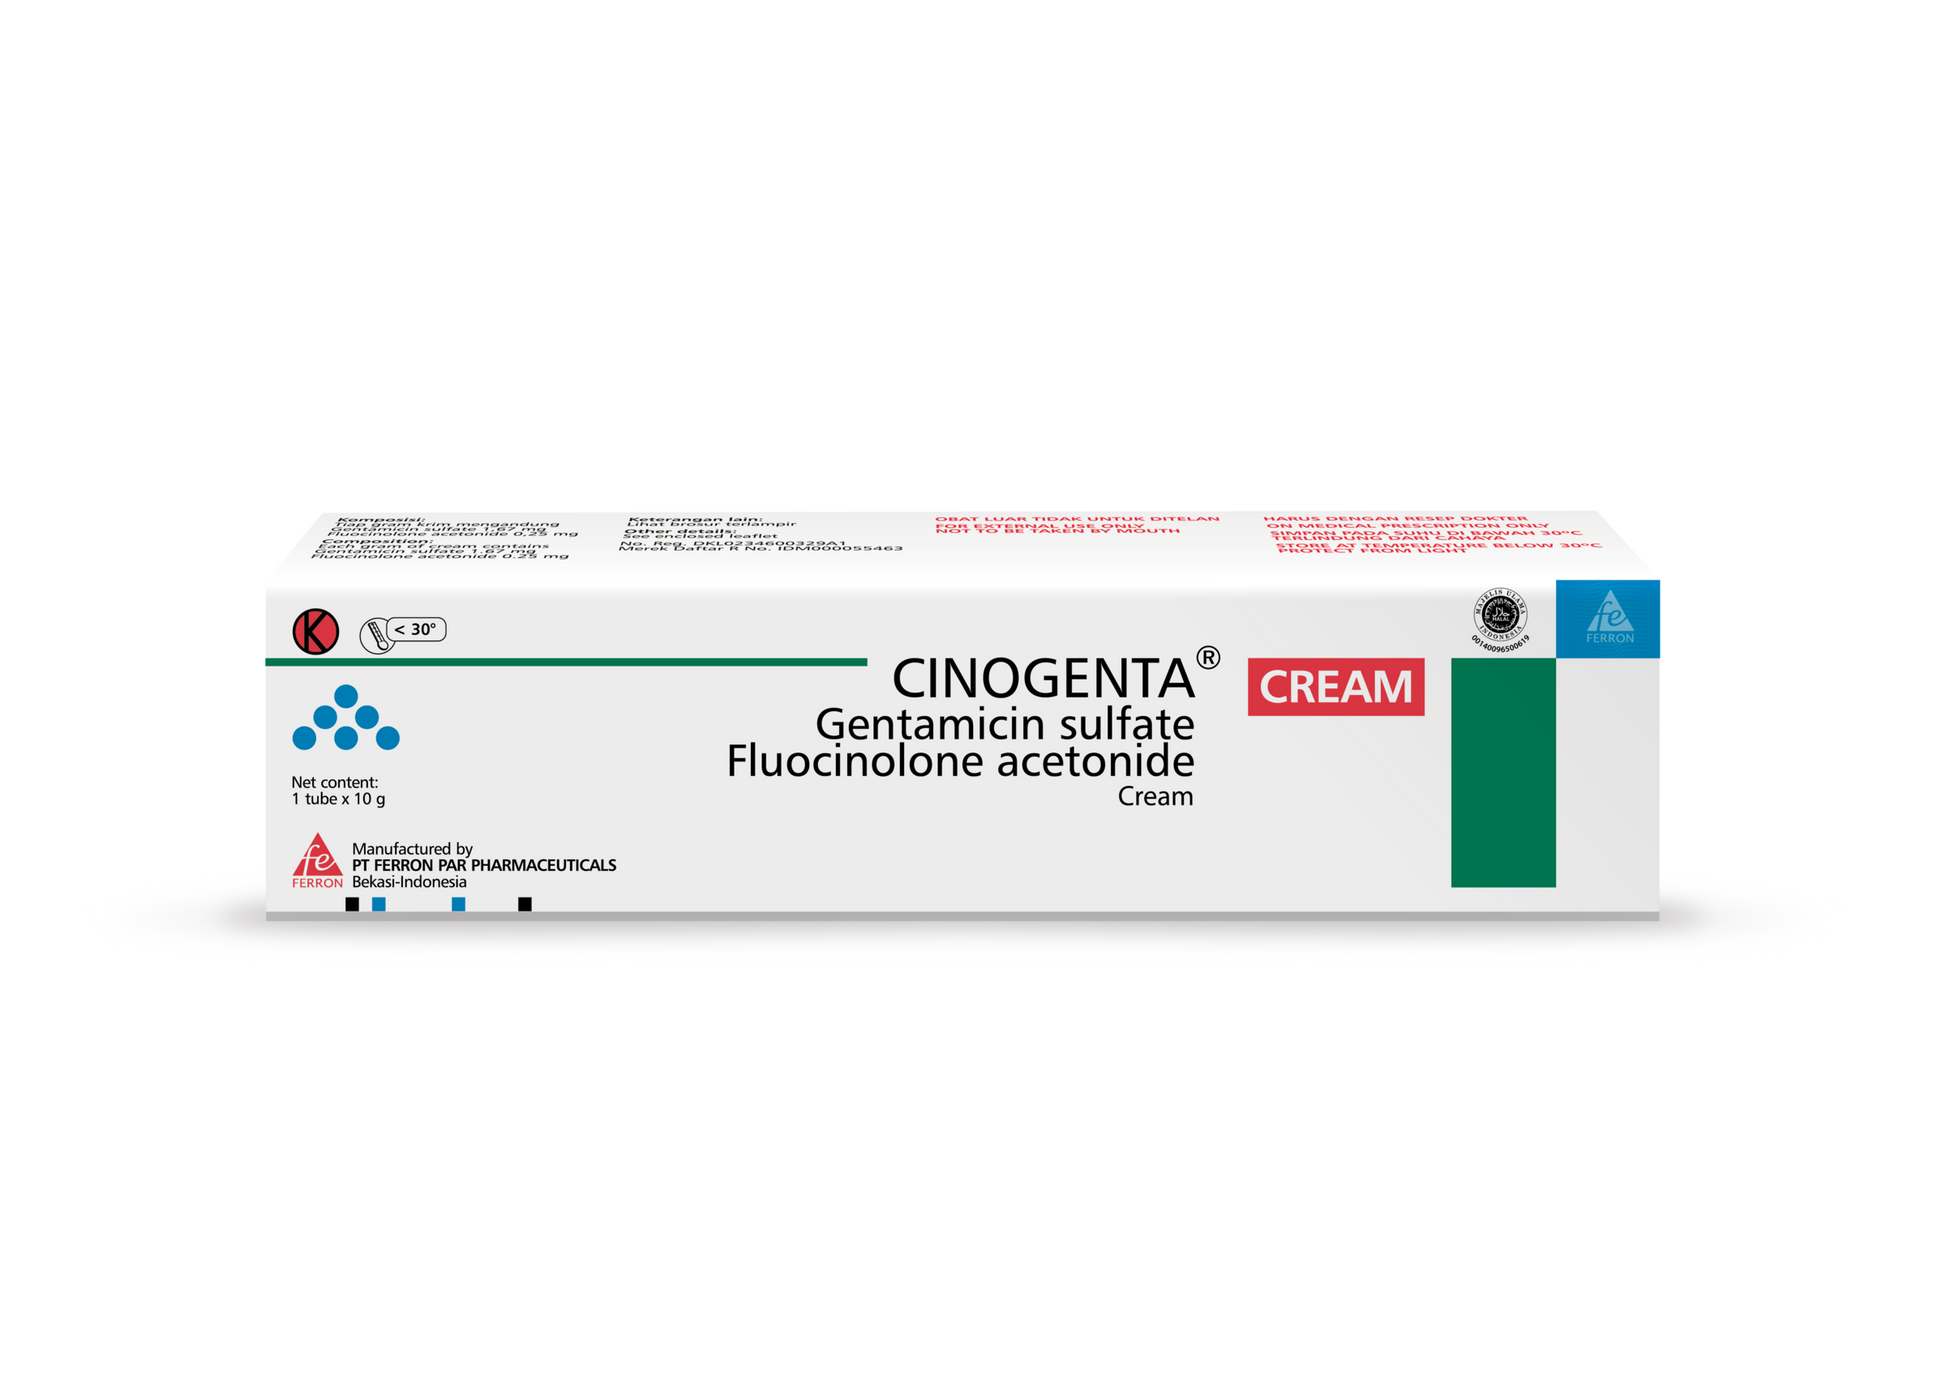 Gentamicin Sulfate Cream Cinogenta Fluocinolone Acetonide